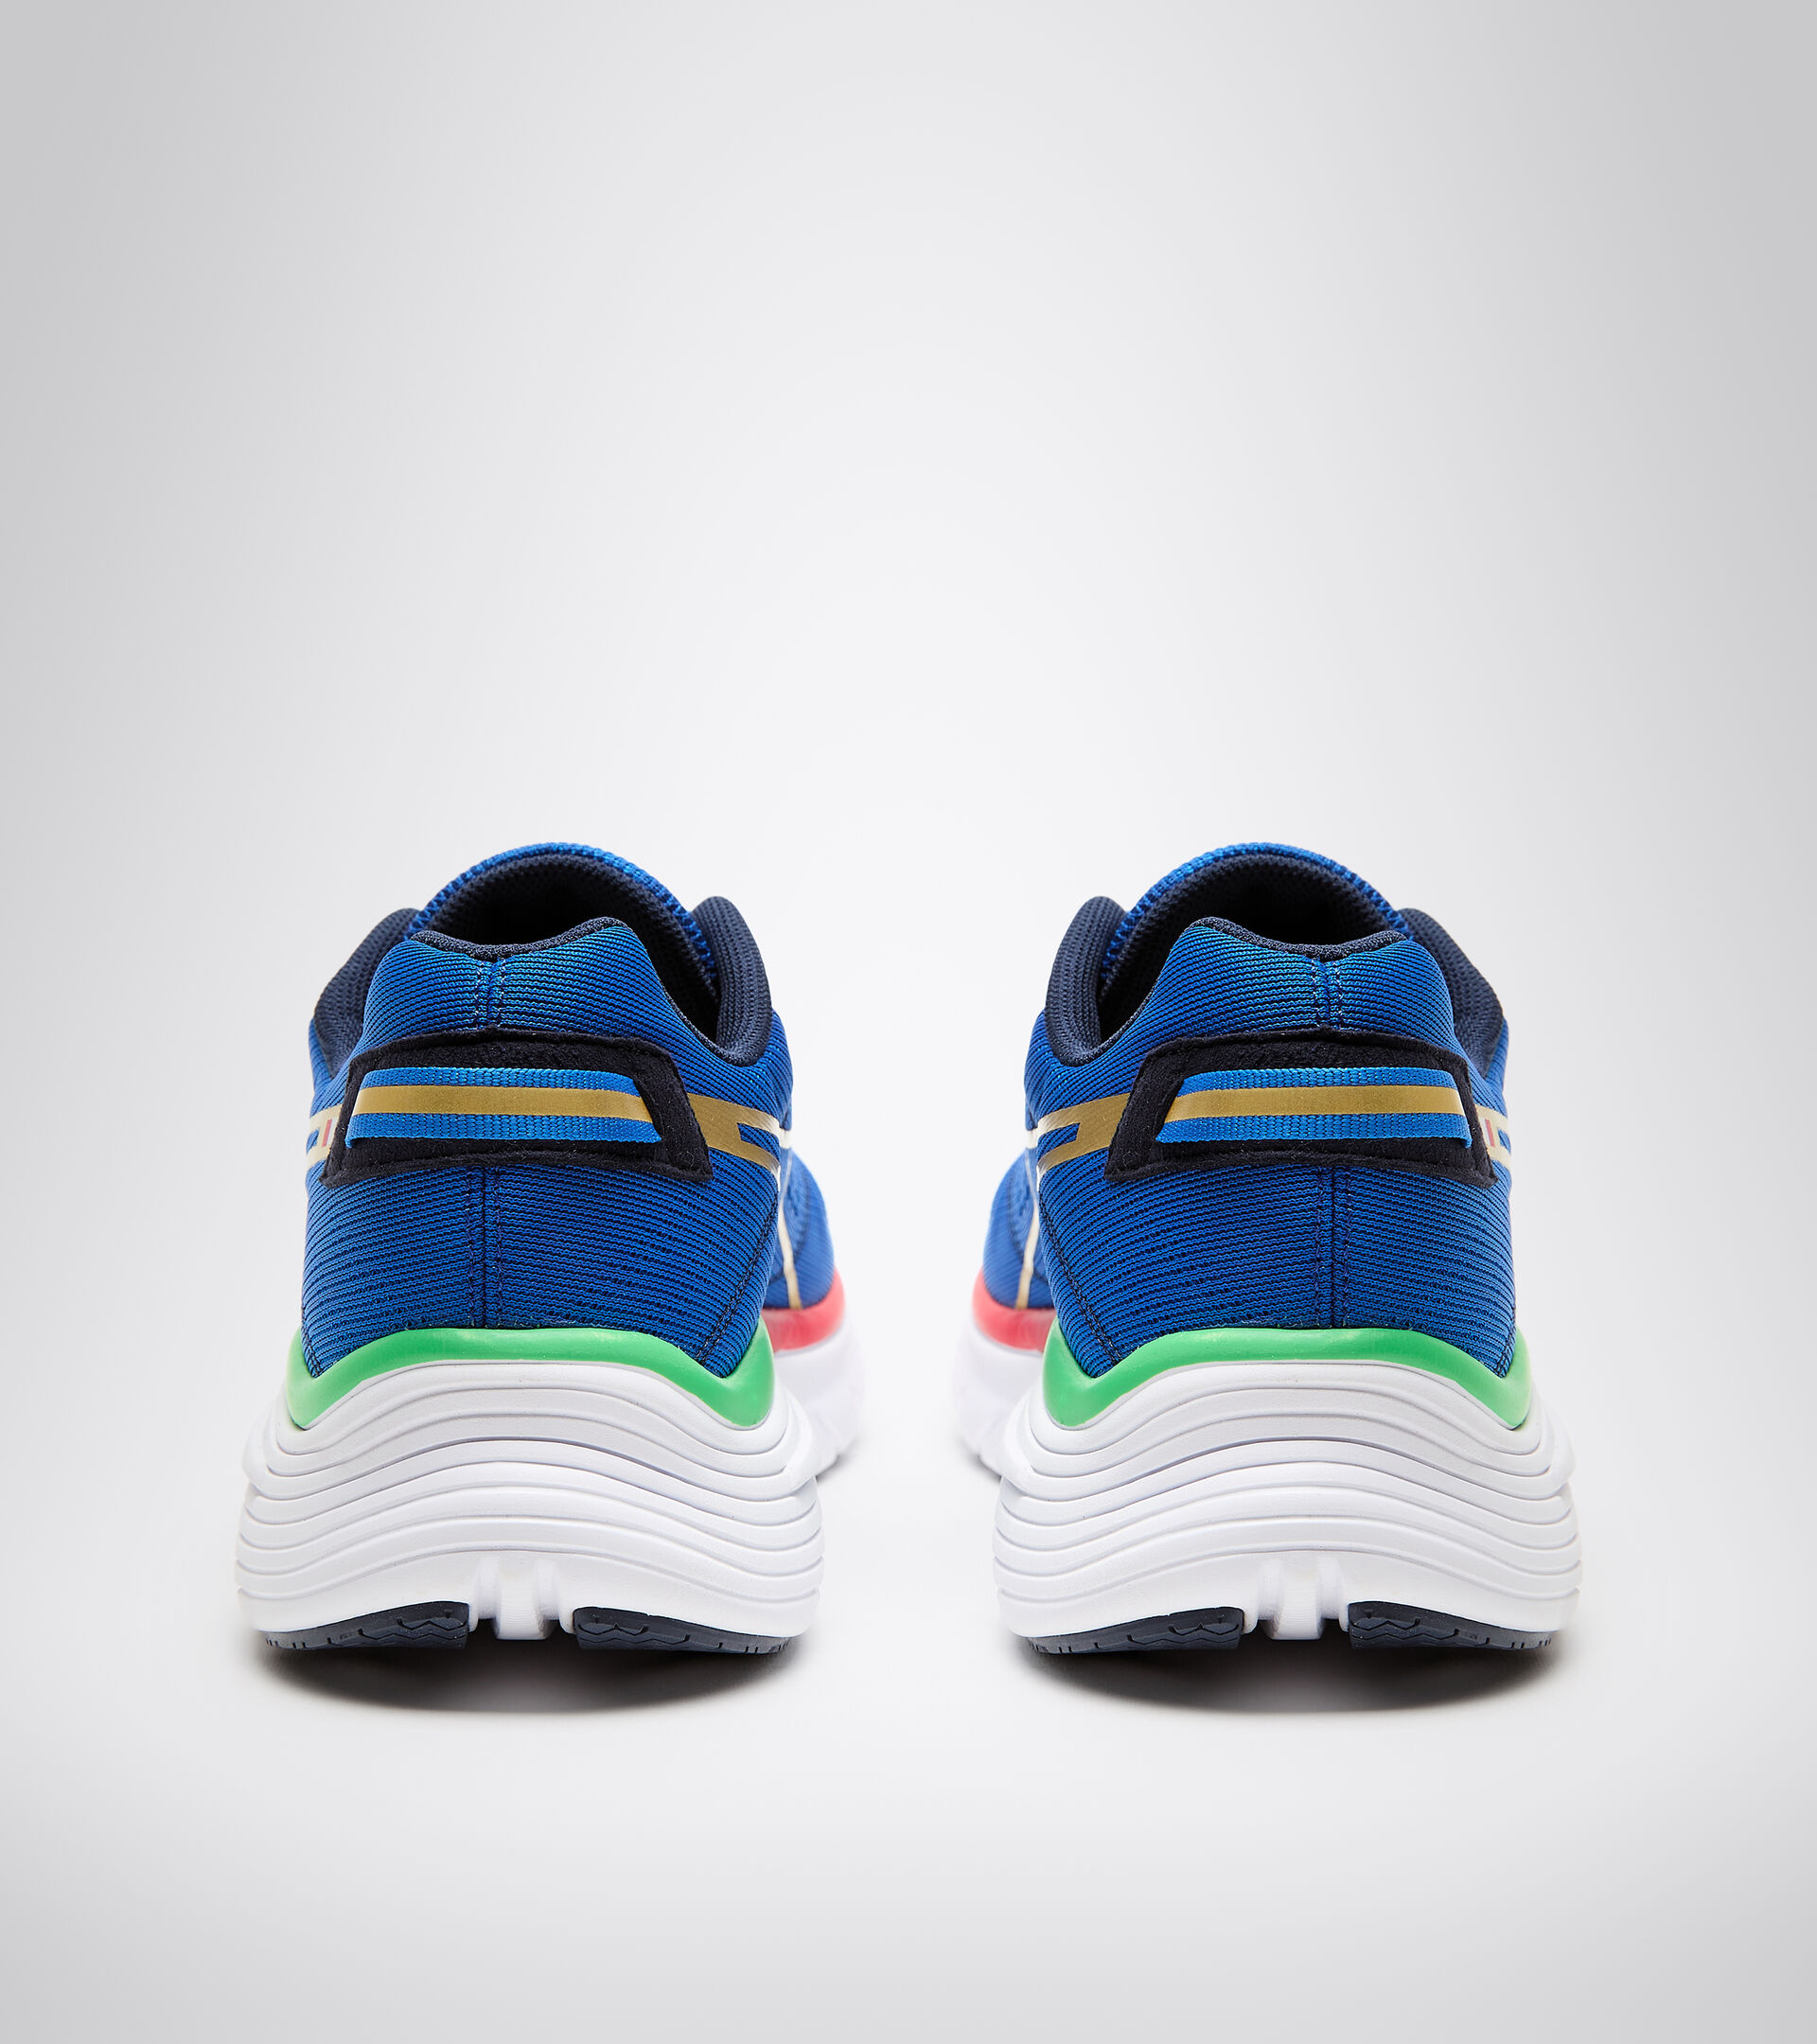 EQUIPE ATOMO Made in Italy - Running shoes - Men’s - Diadora Online ...